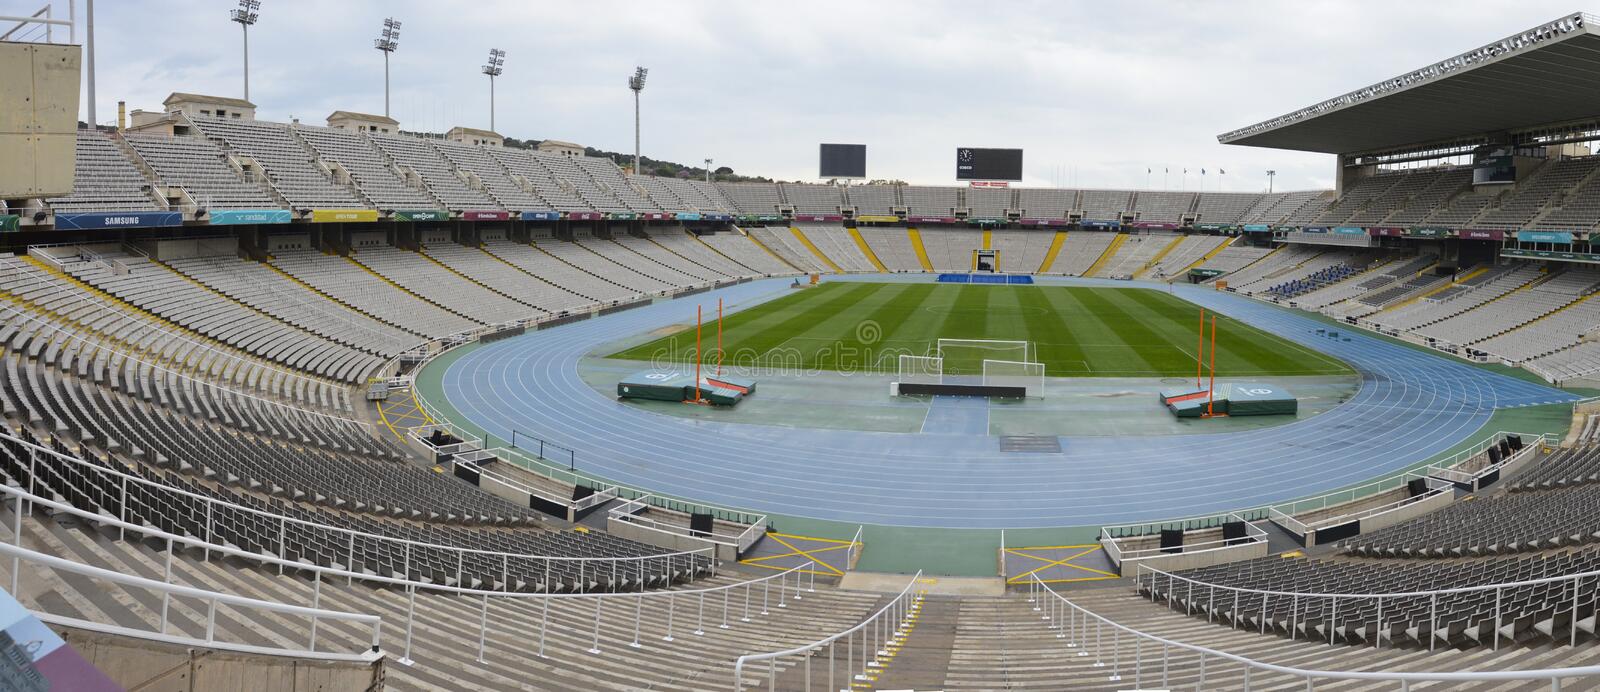 Por obras en el Camp Nou, el Barça jugará en Montjuïc